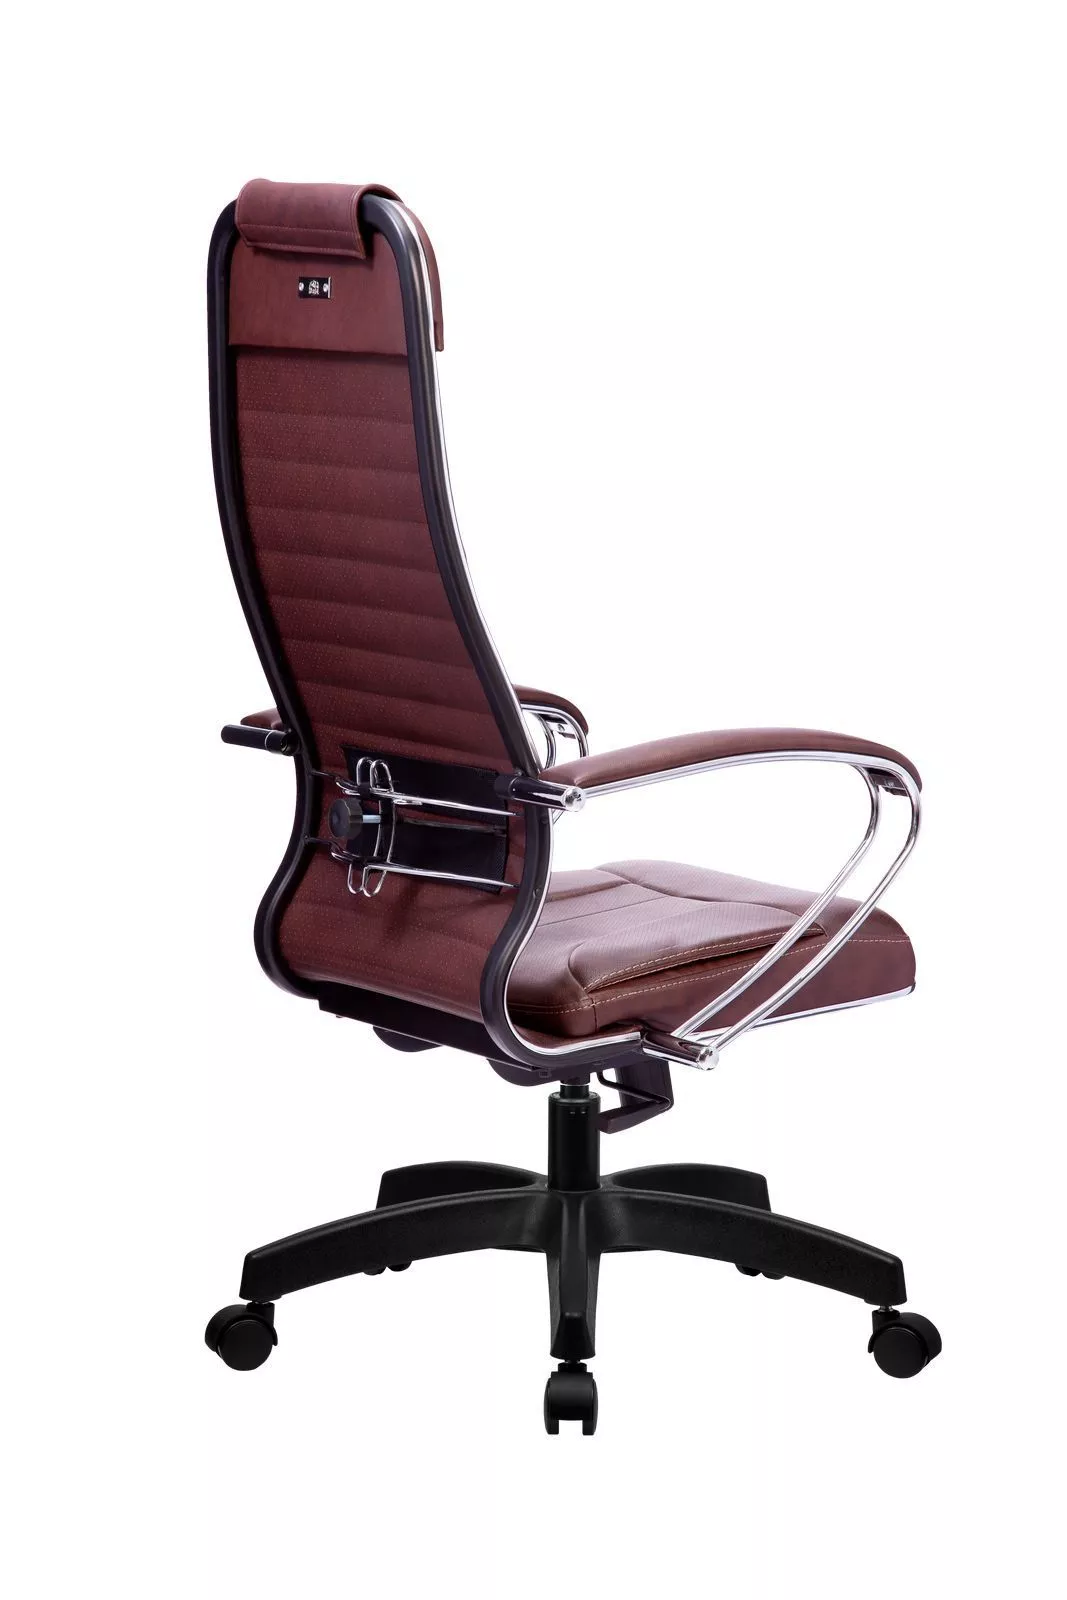 Кресло компьютерное Метта Комплект 6 Pl темно-коричневый